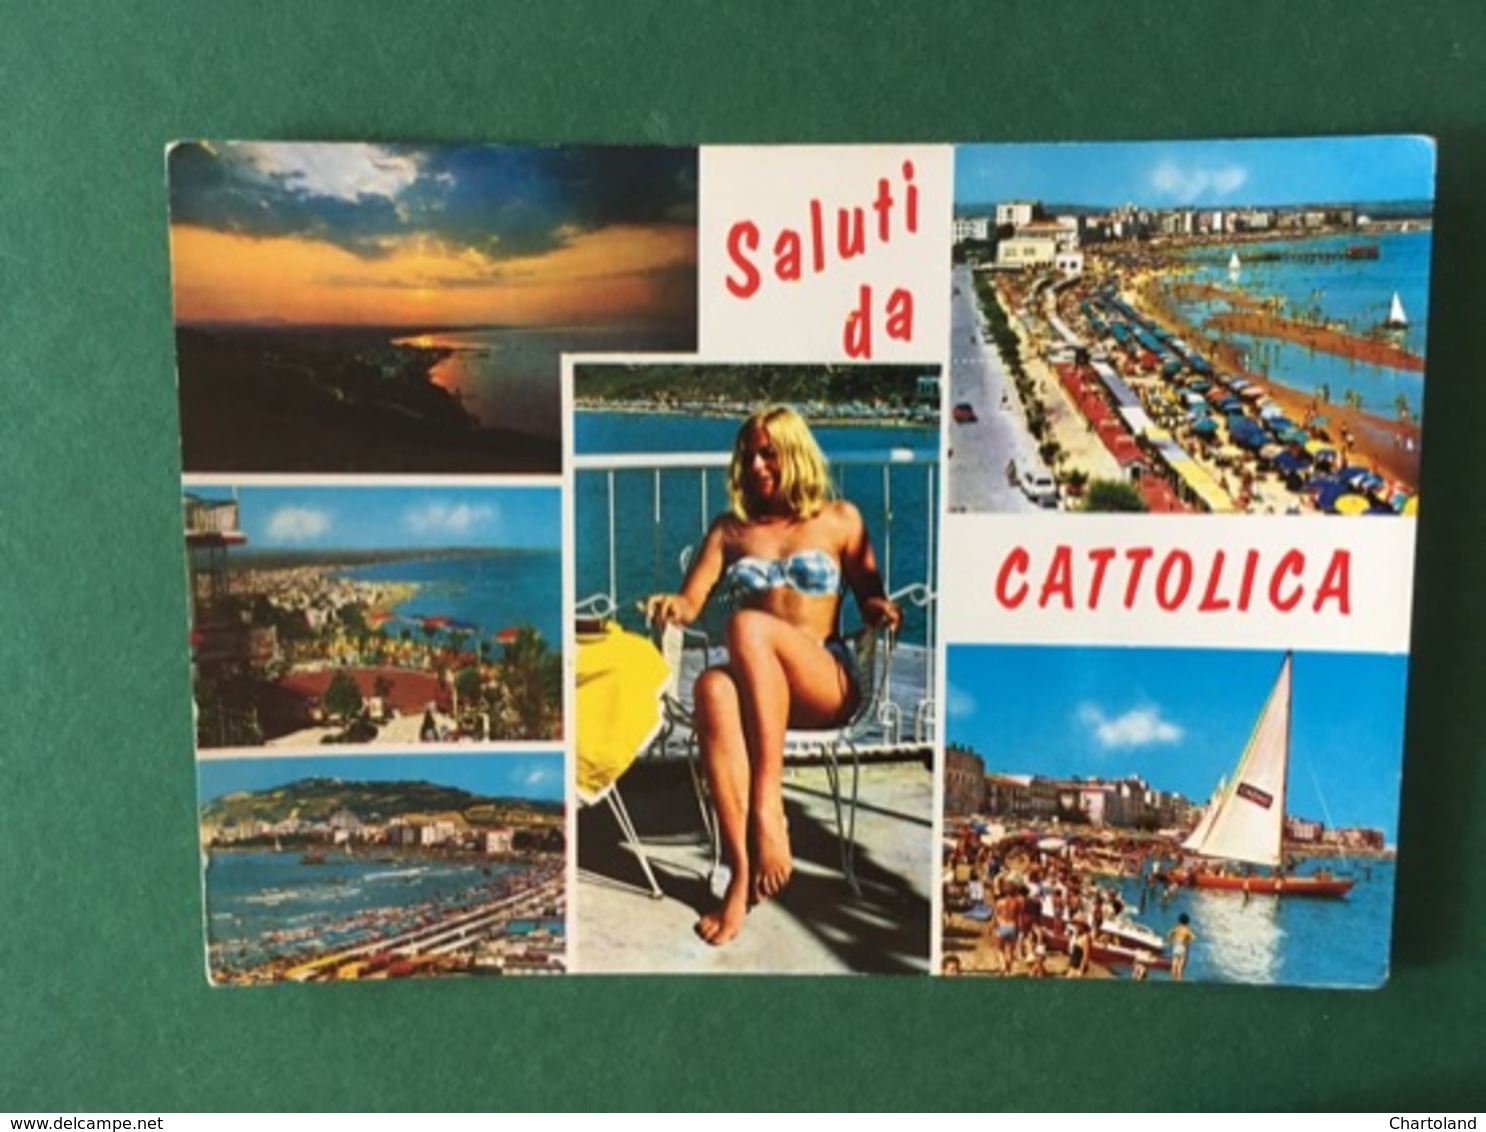 Cartolina Saluti Da Catolica - 1967 - Rimini